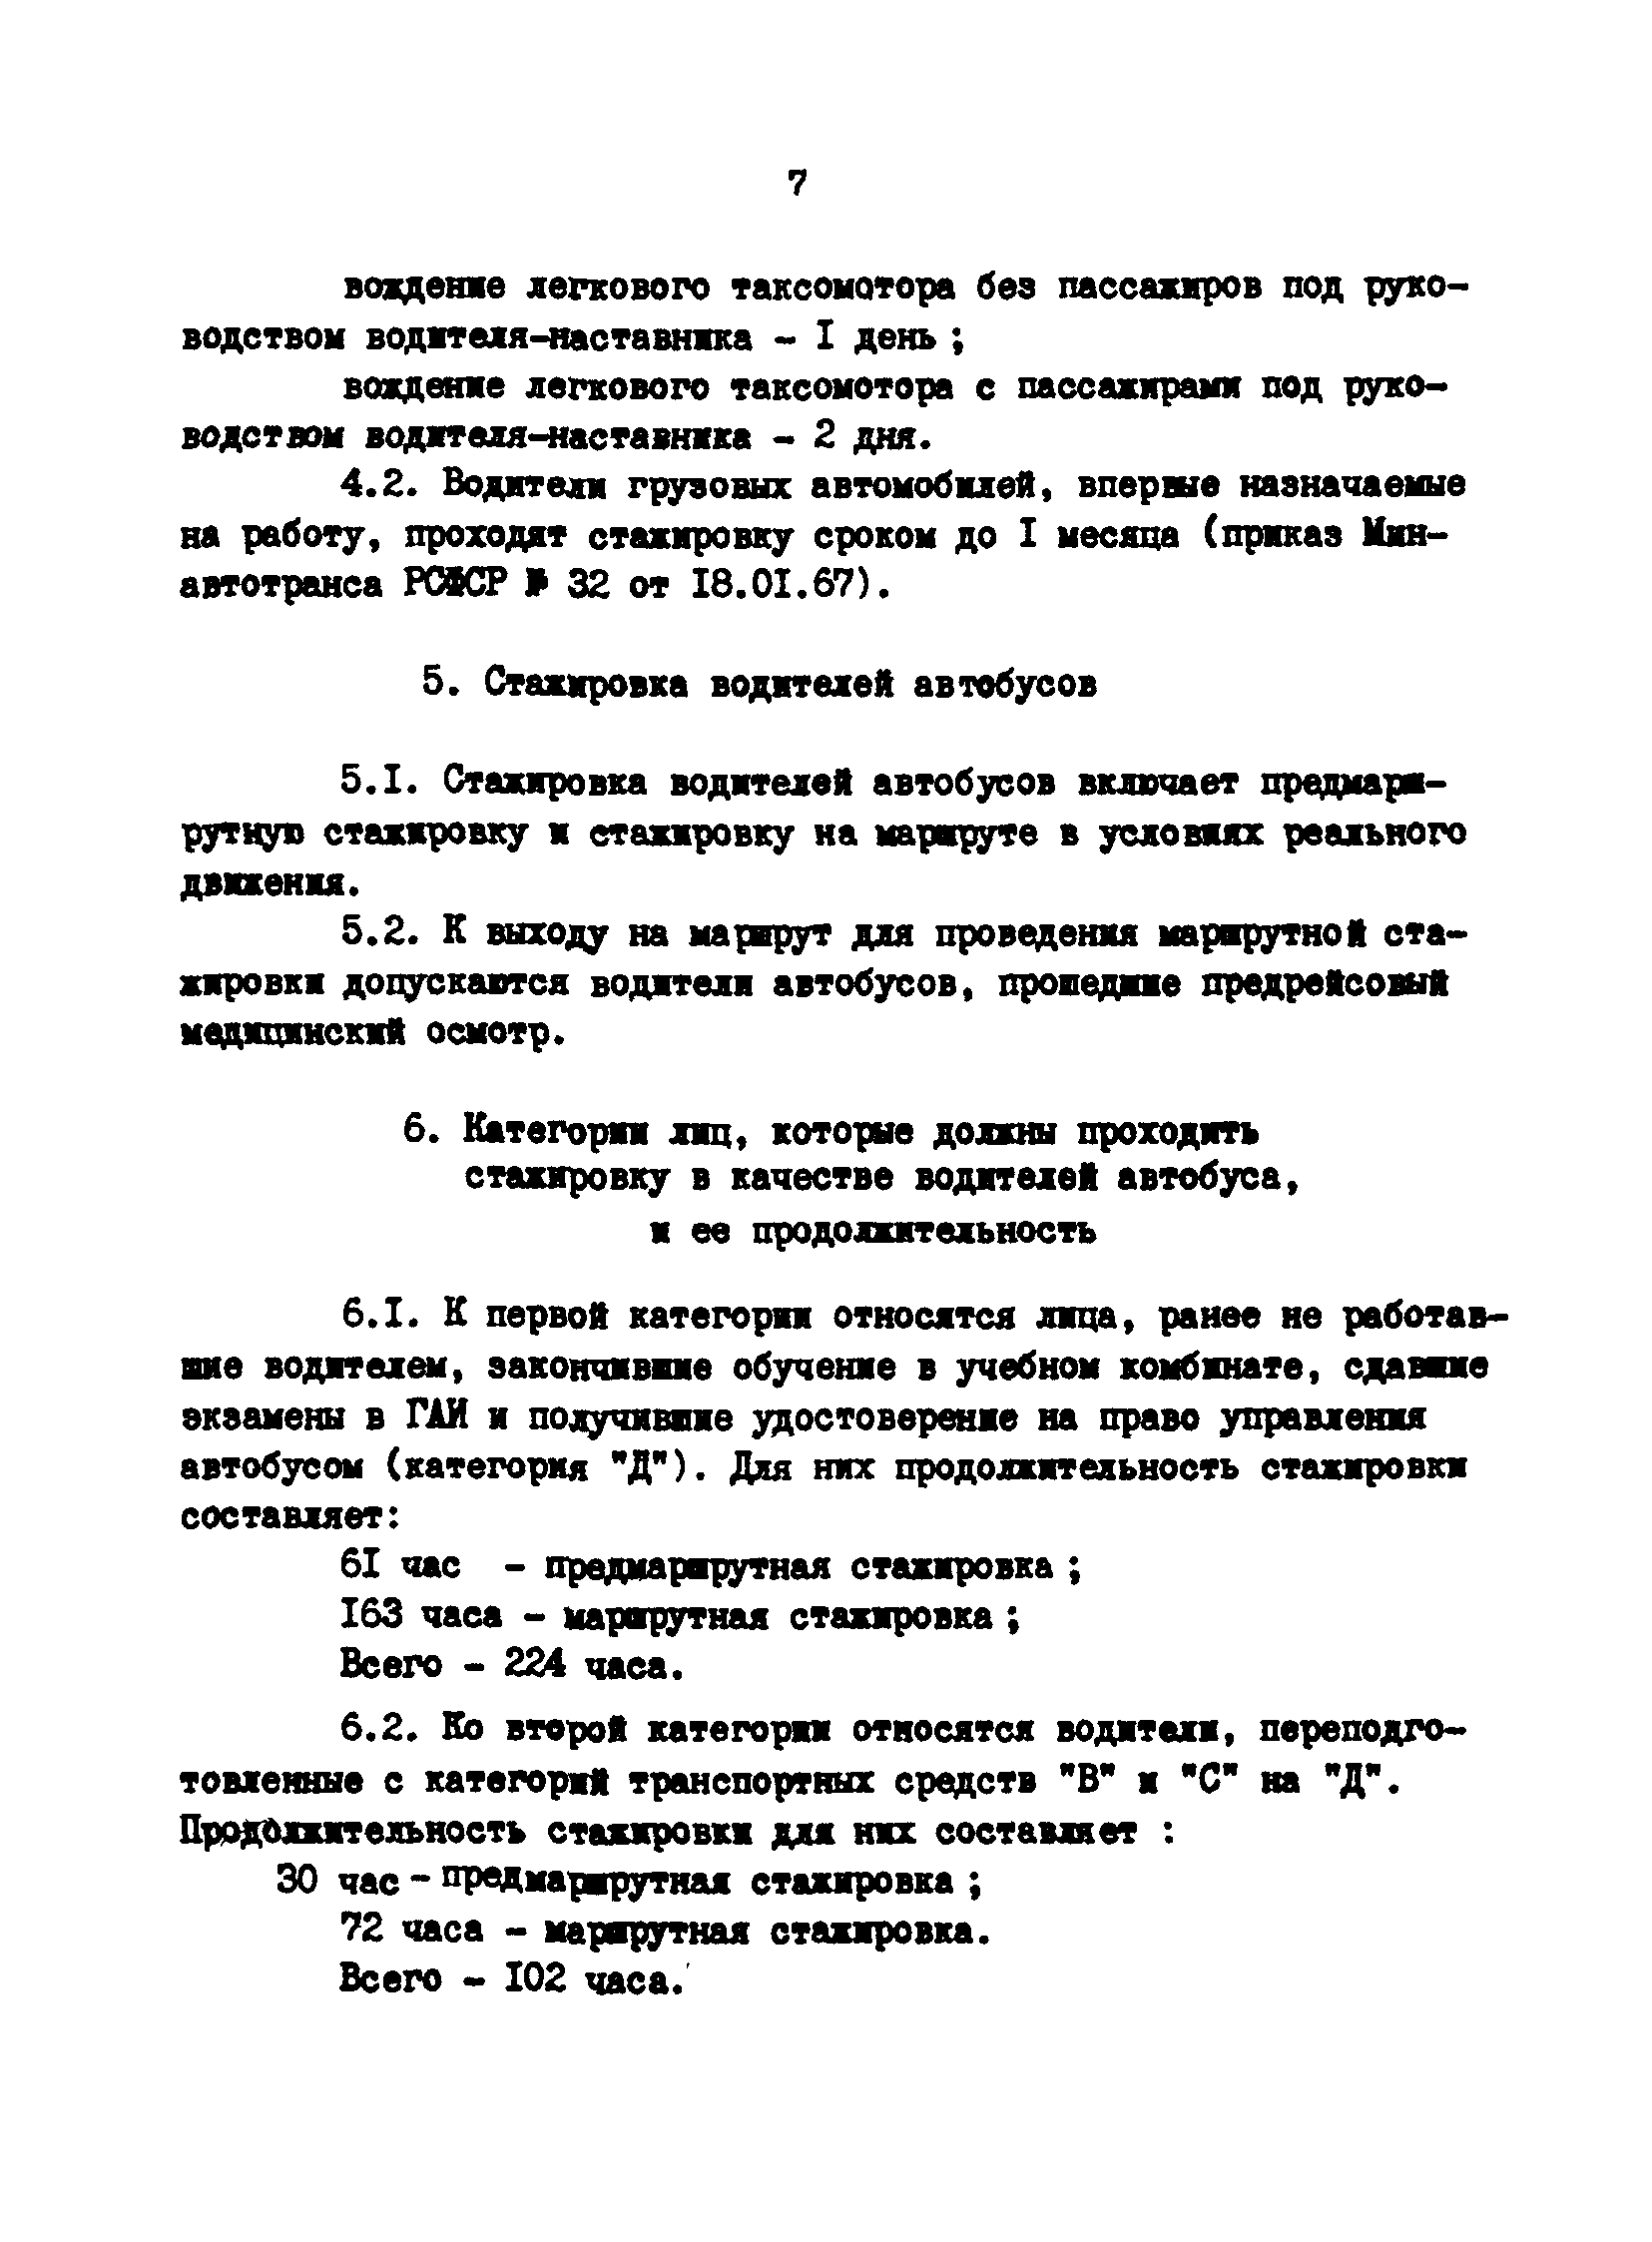 РД 200-РСФСР-12-0071-86-12